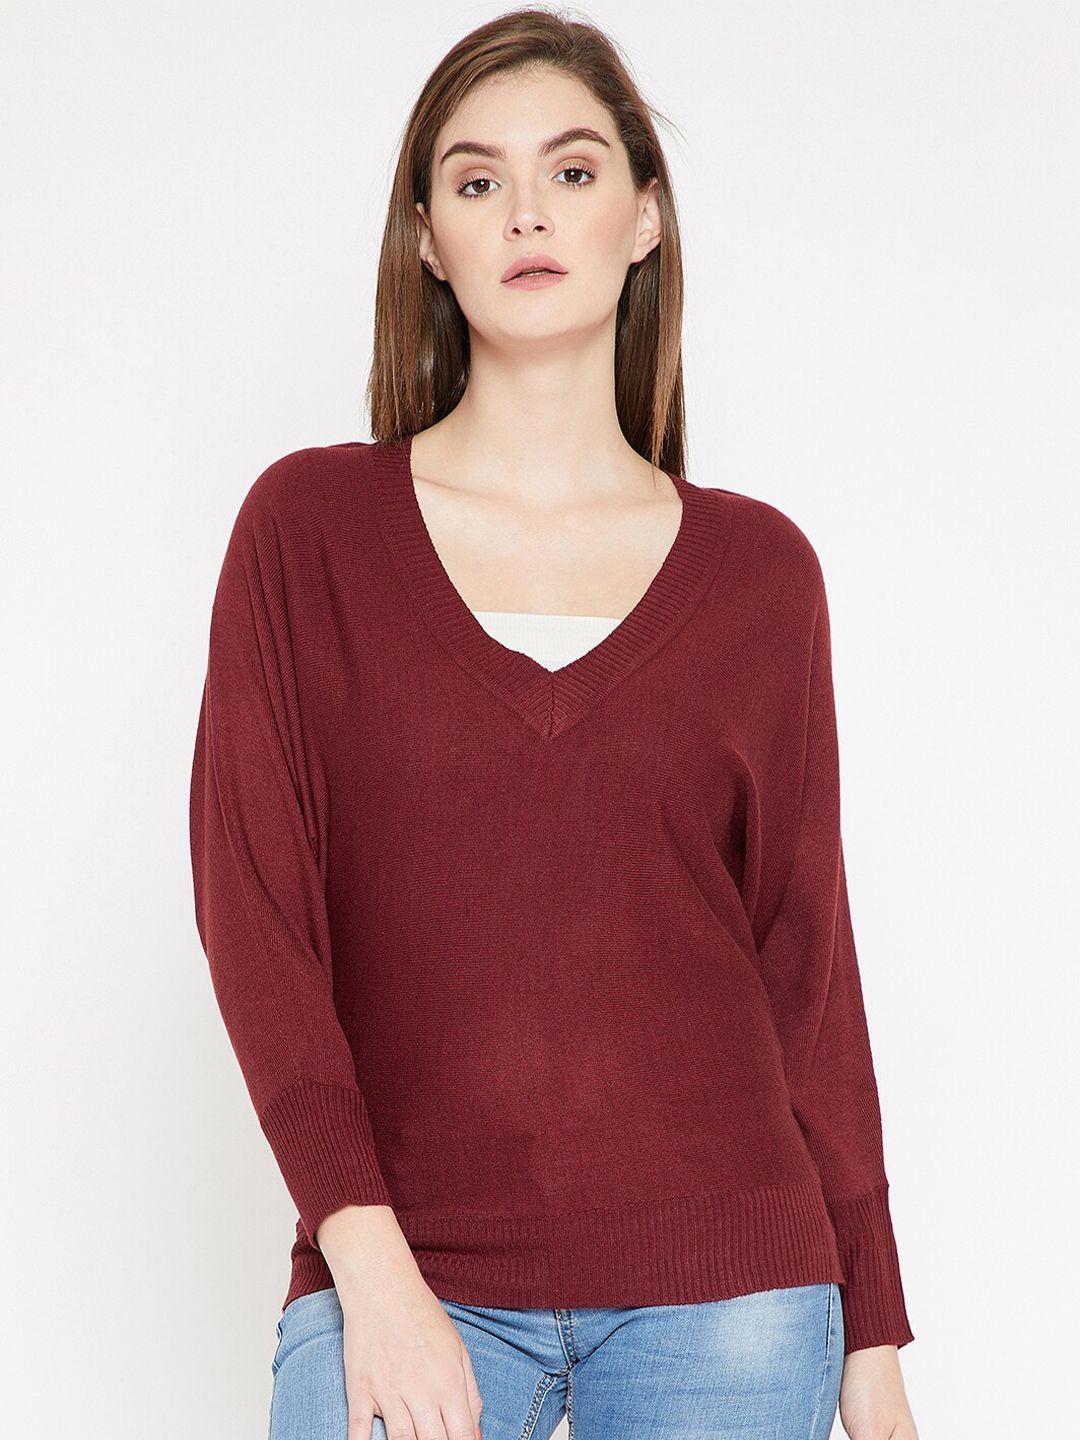 carlton london women maroon solid sweater